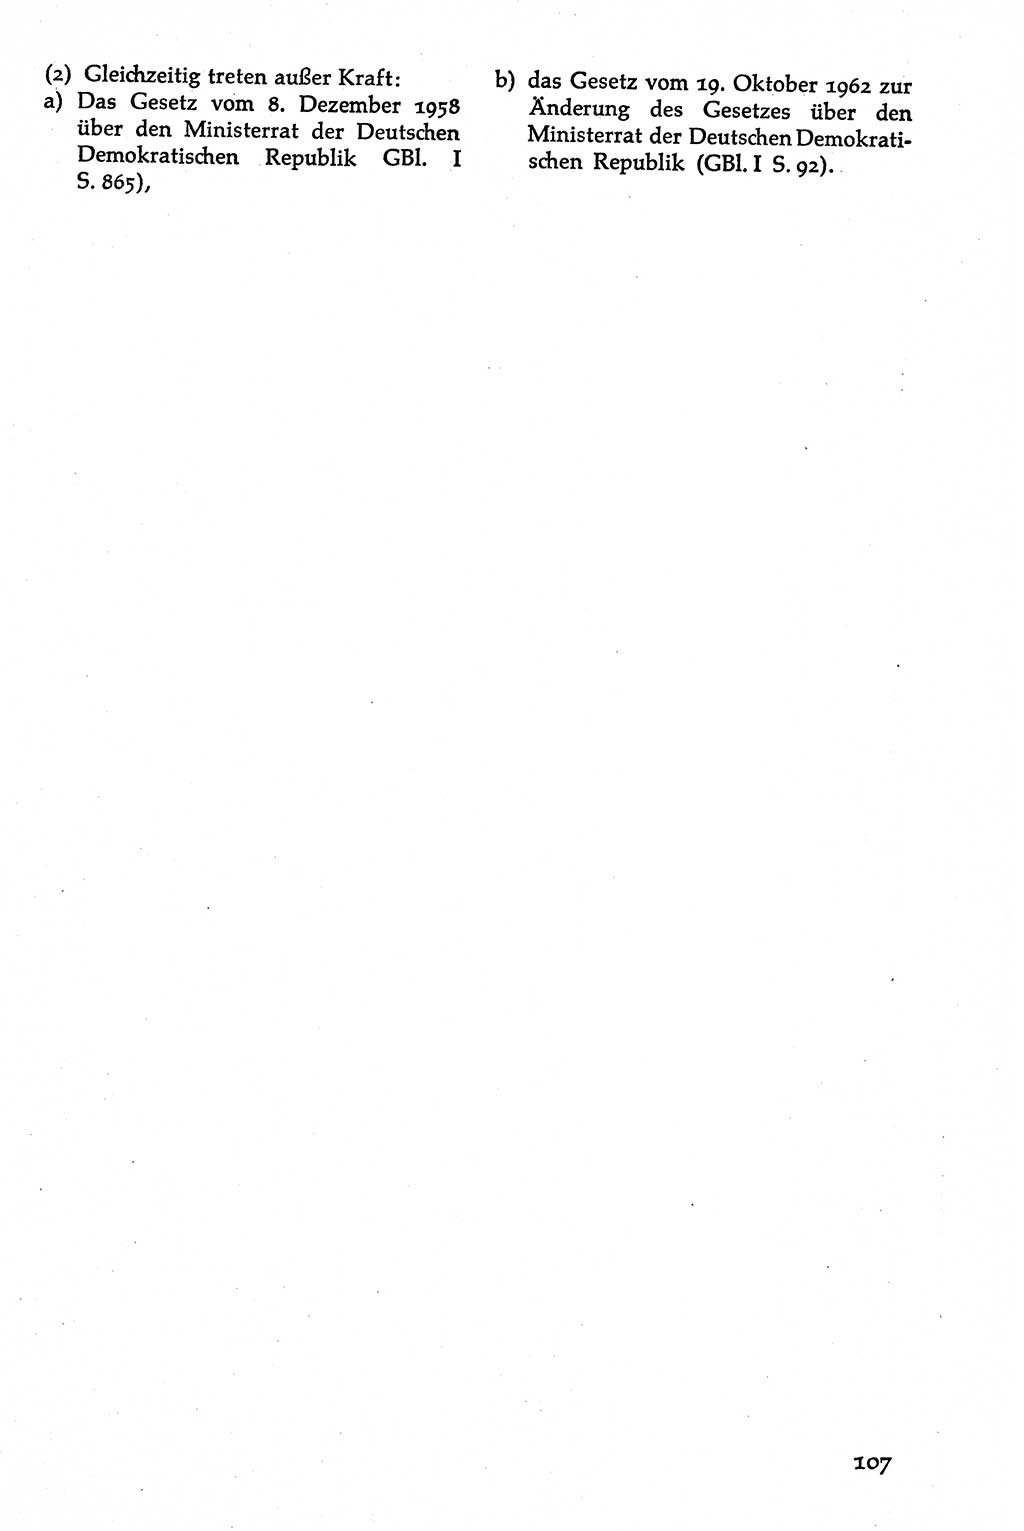 Volksdemokratische Ordnung in Mitteldeutschland [Deutsche Demokratische Republik (DDR)], Texte zur verfassungsrechtlichen Situation 1963, Seite 107 (Volksdem. Ordn. Md. DDR 1963, S. 107)